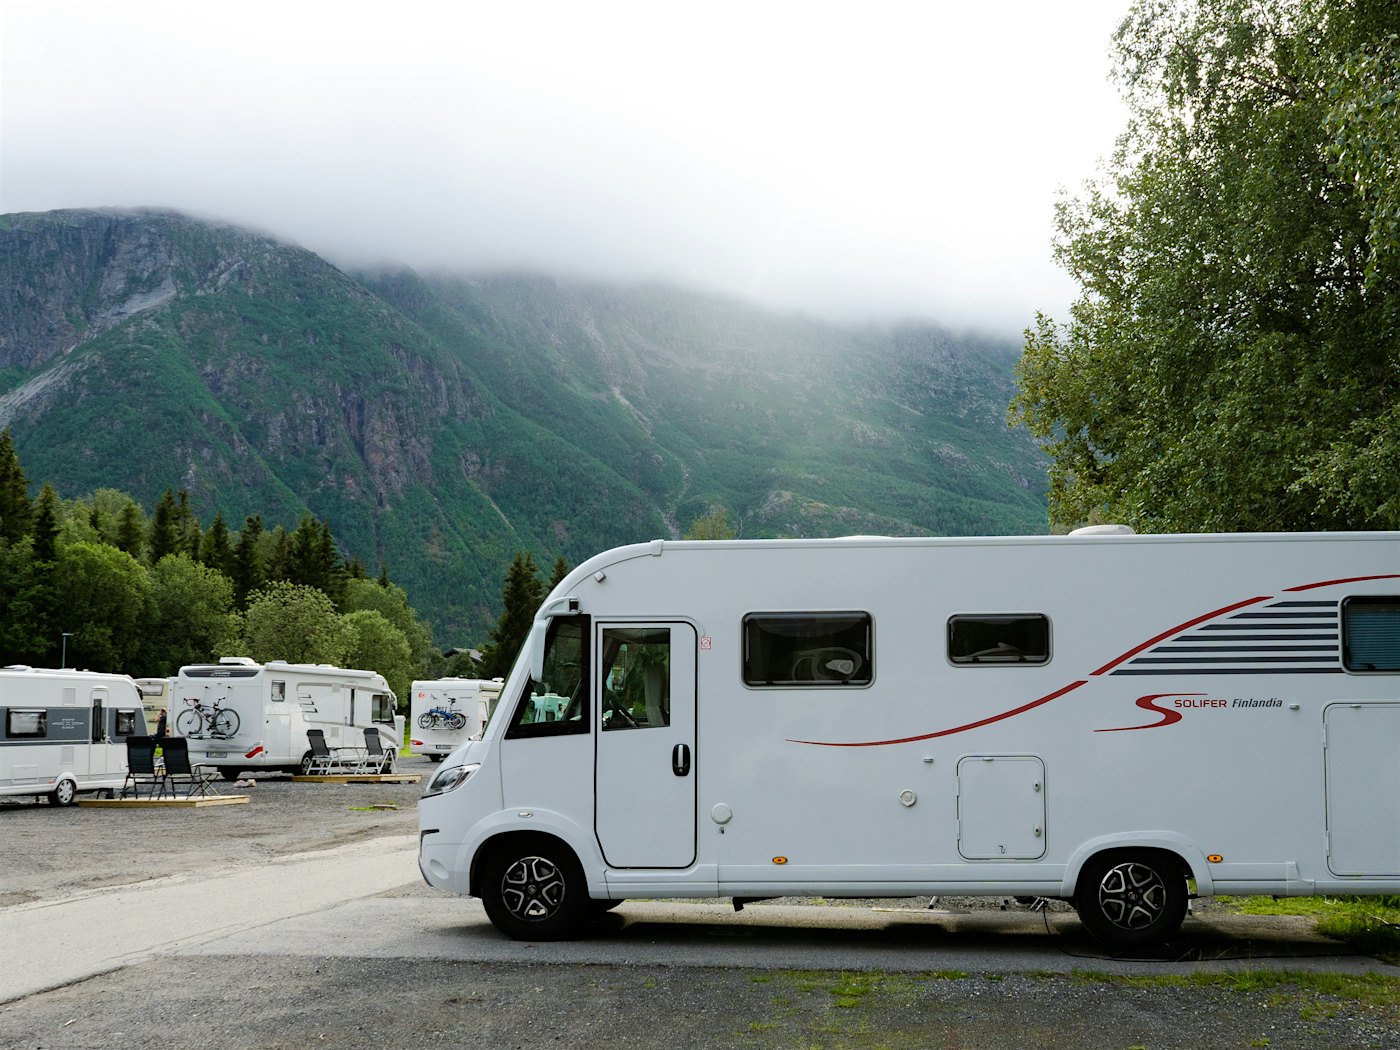 Wohnmobile und Wohnwagen stehen auf einem Campingplatz, im Hintergrund hohe Berge. Foto